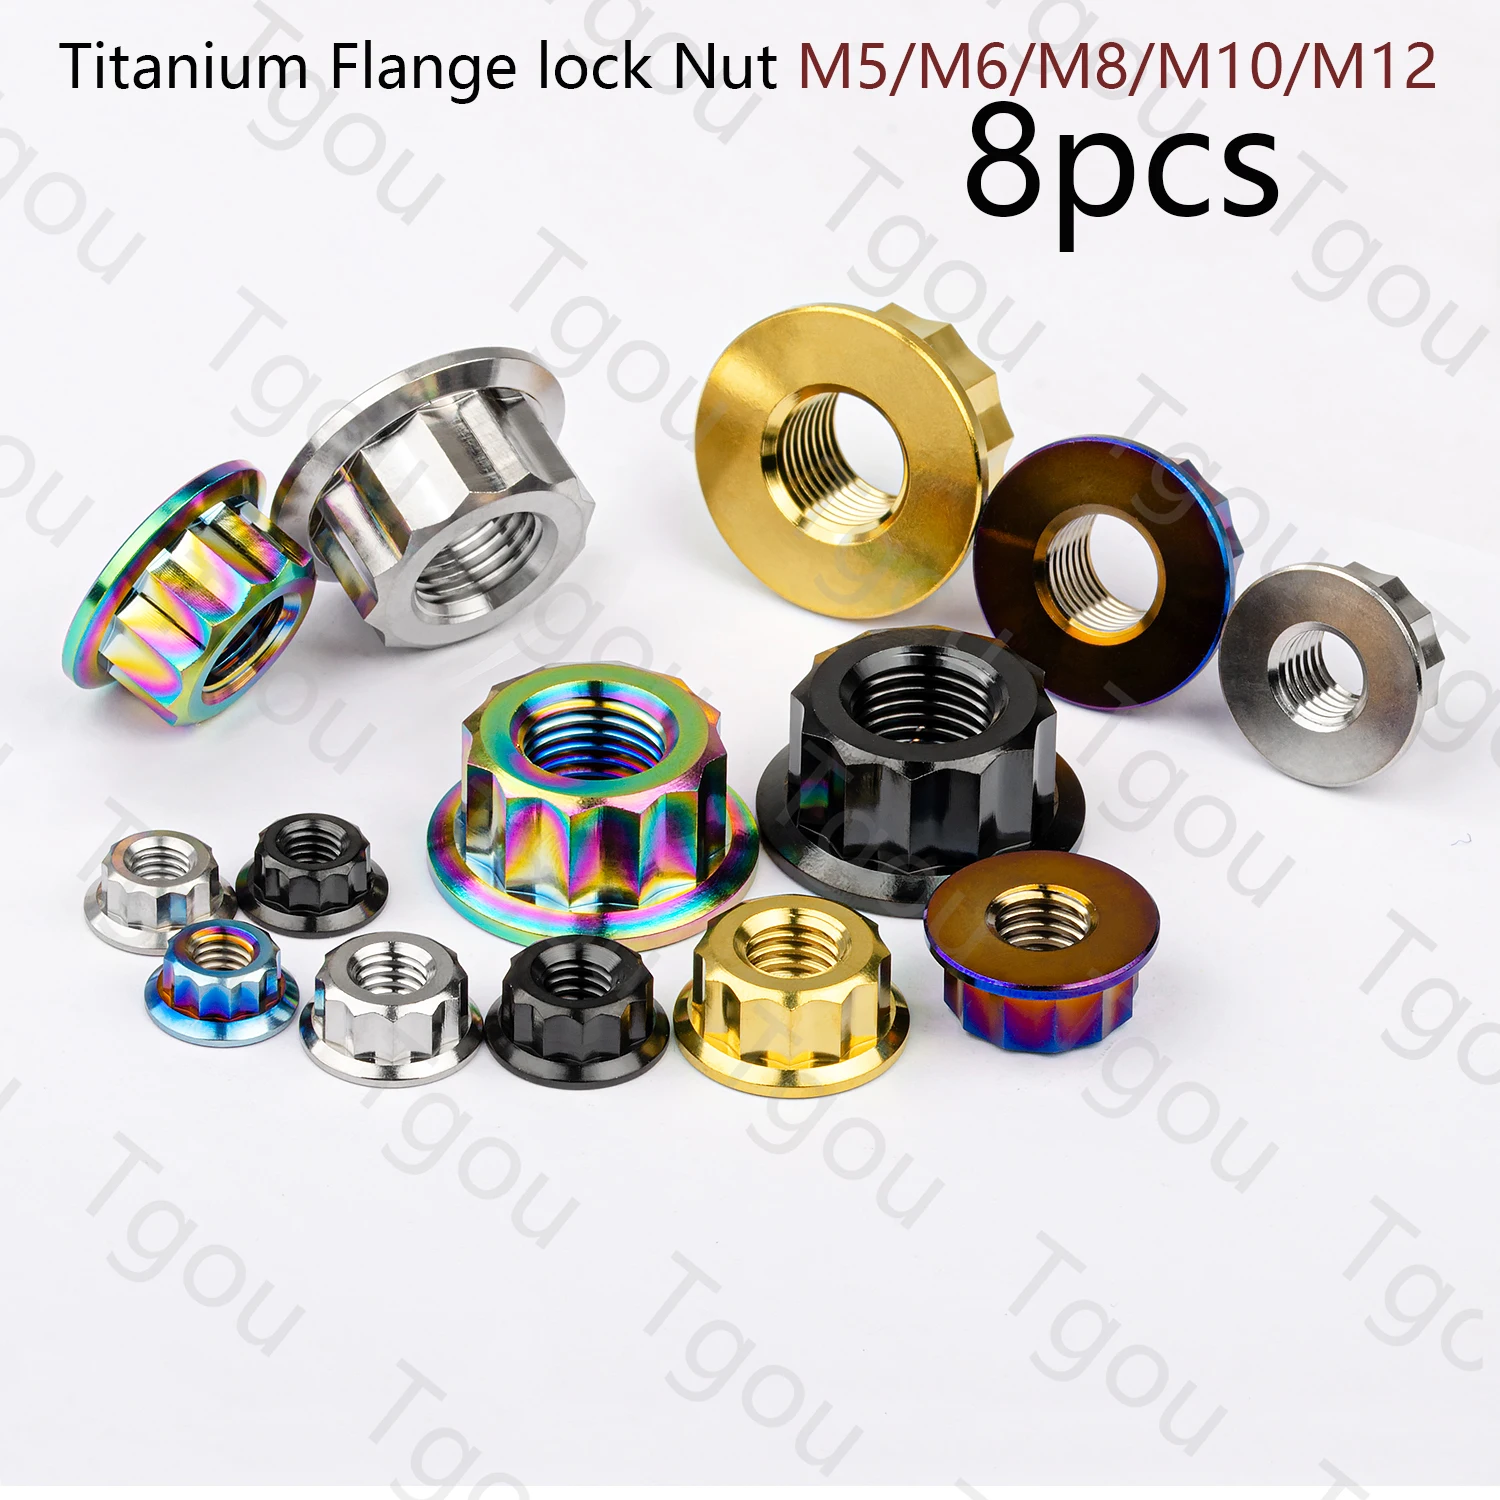 

Tgou Titanium M5 M6 M8 M10 M12 Bi Hex Flange 12 Point Nuts for Motorcycle Retrofit 8pcs